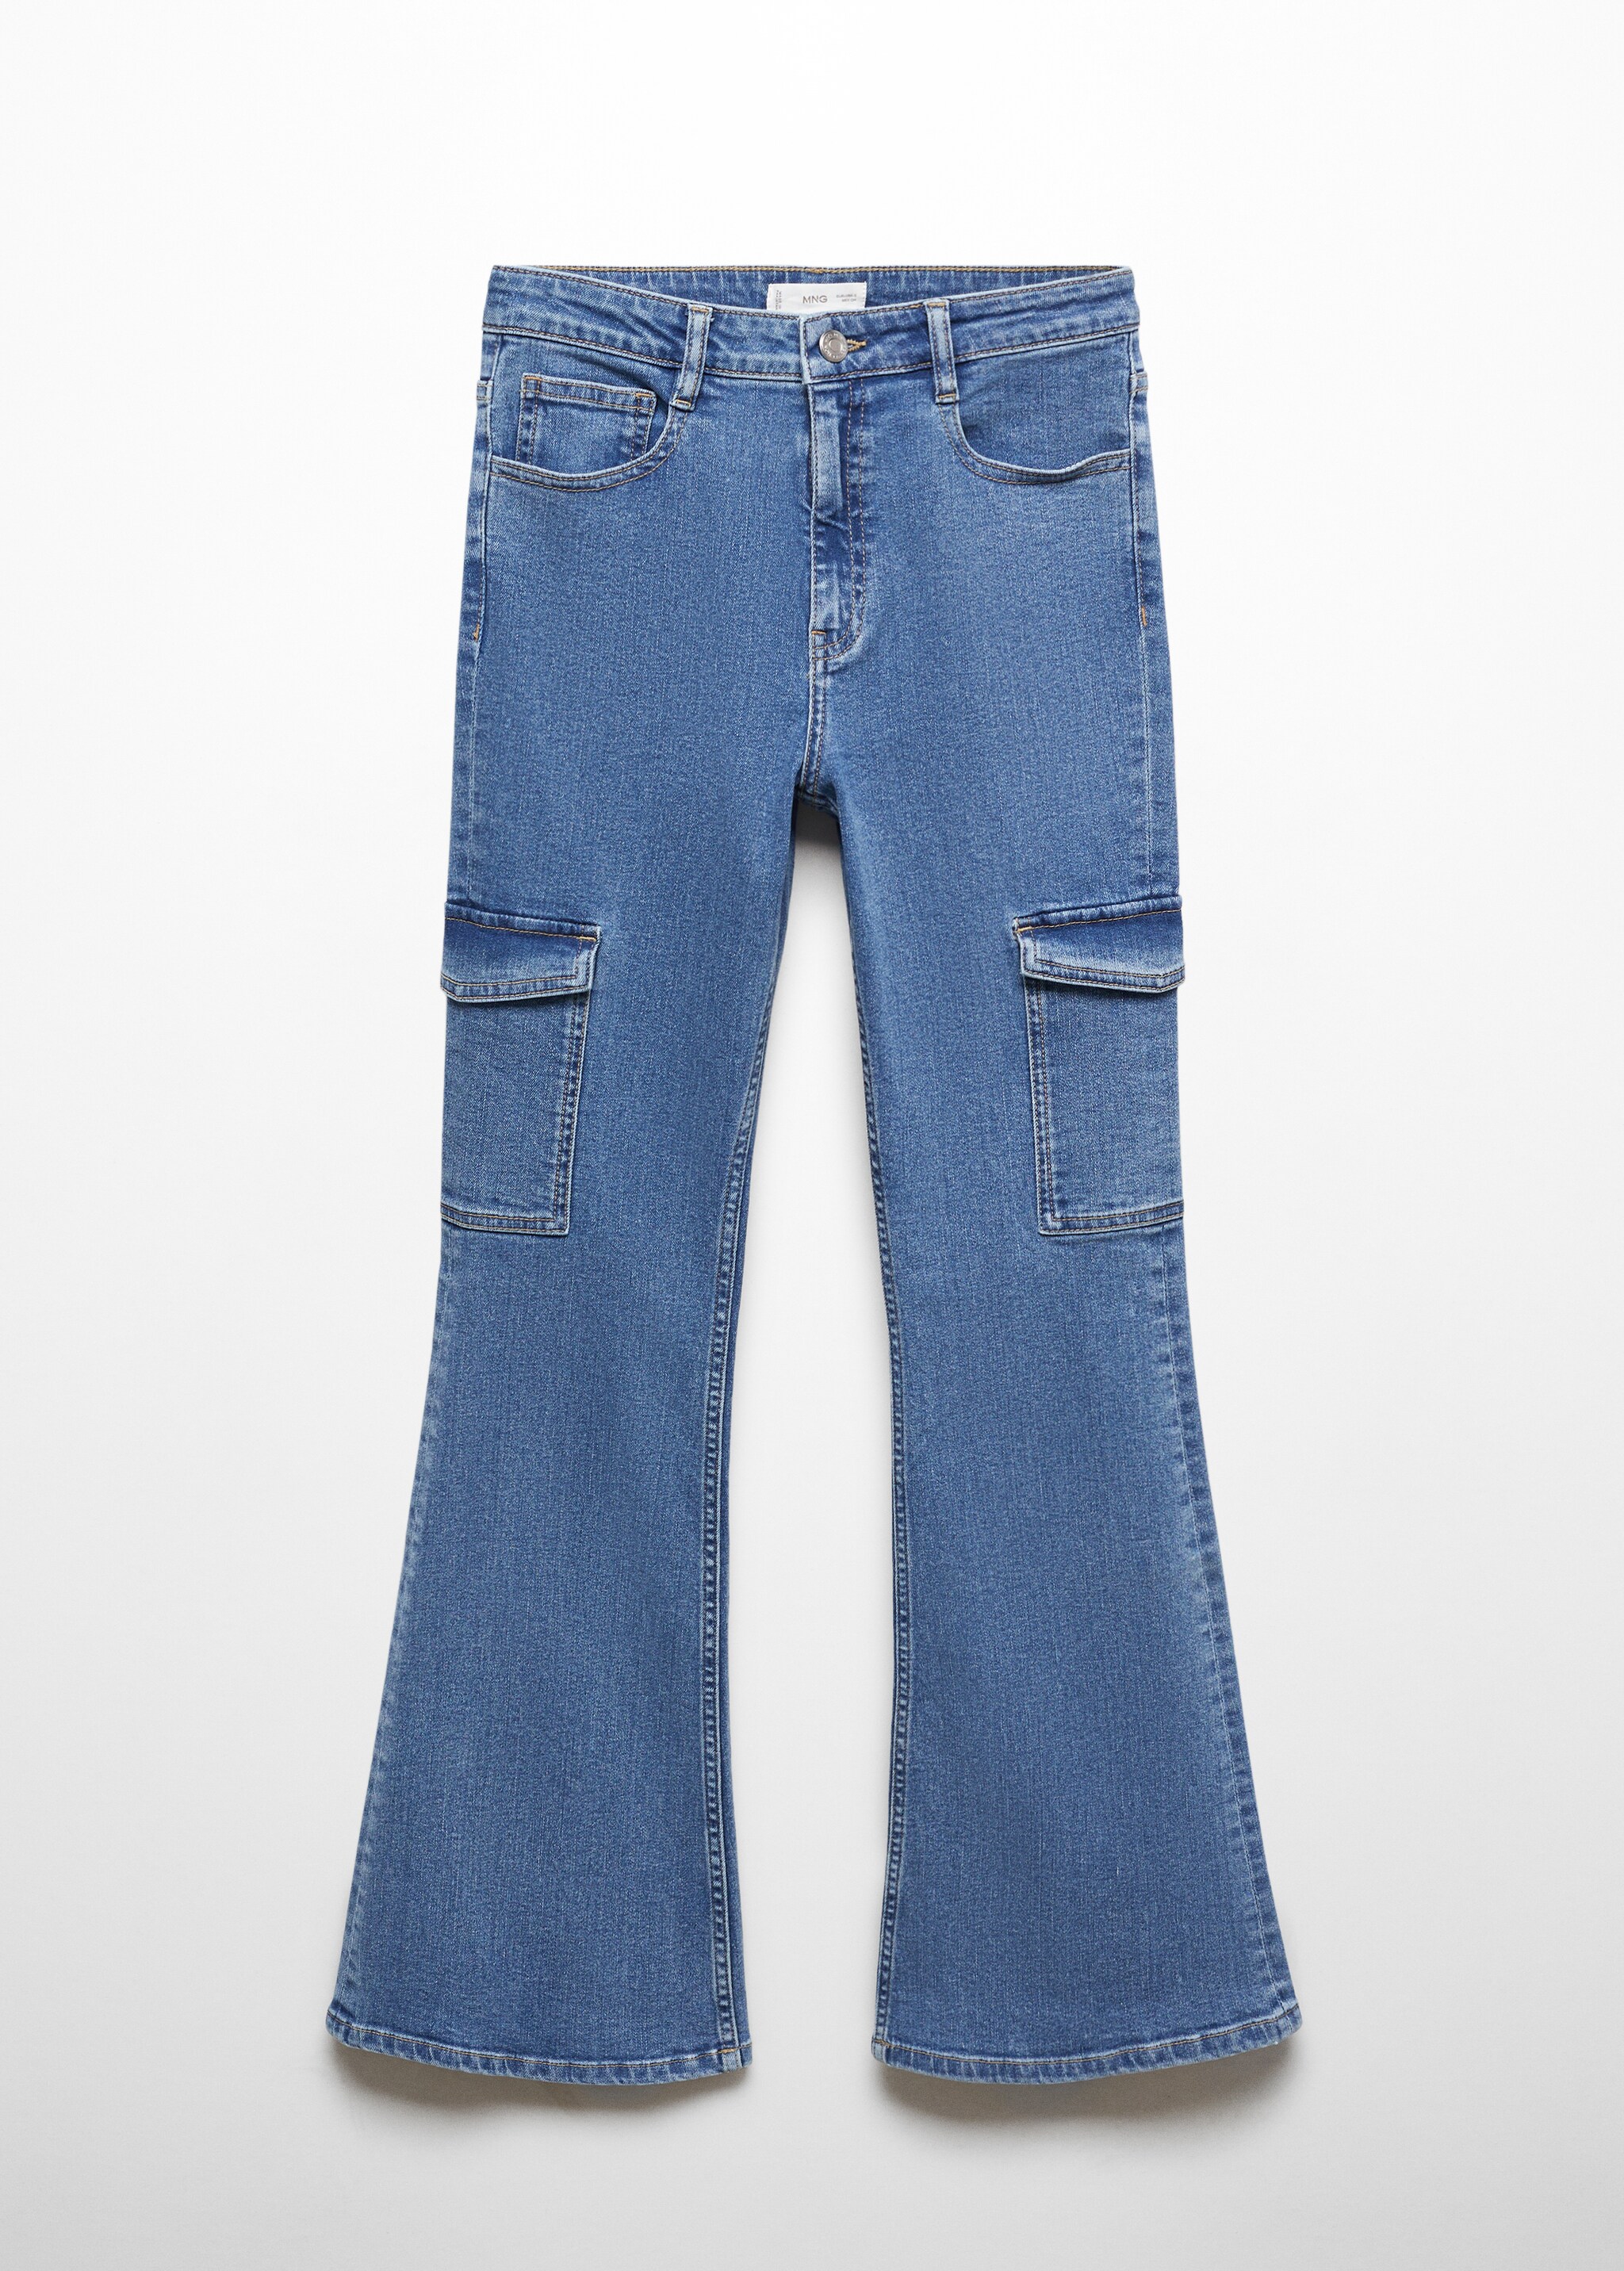 Jeans flare cargo - Artículo sin modelo